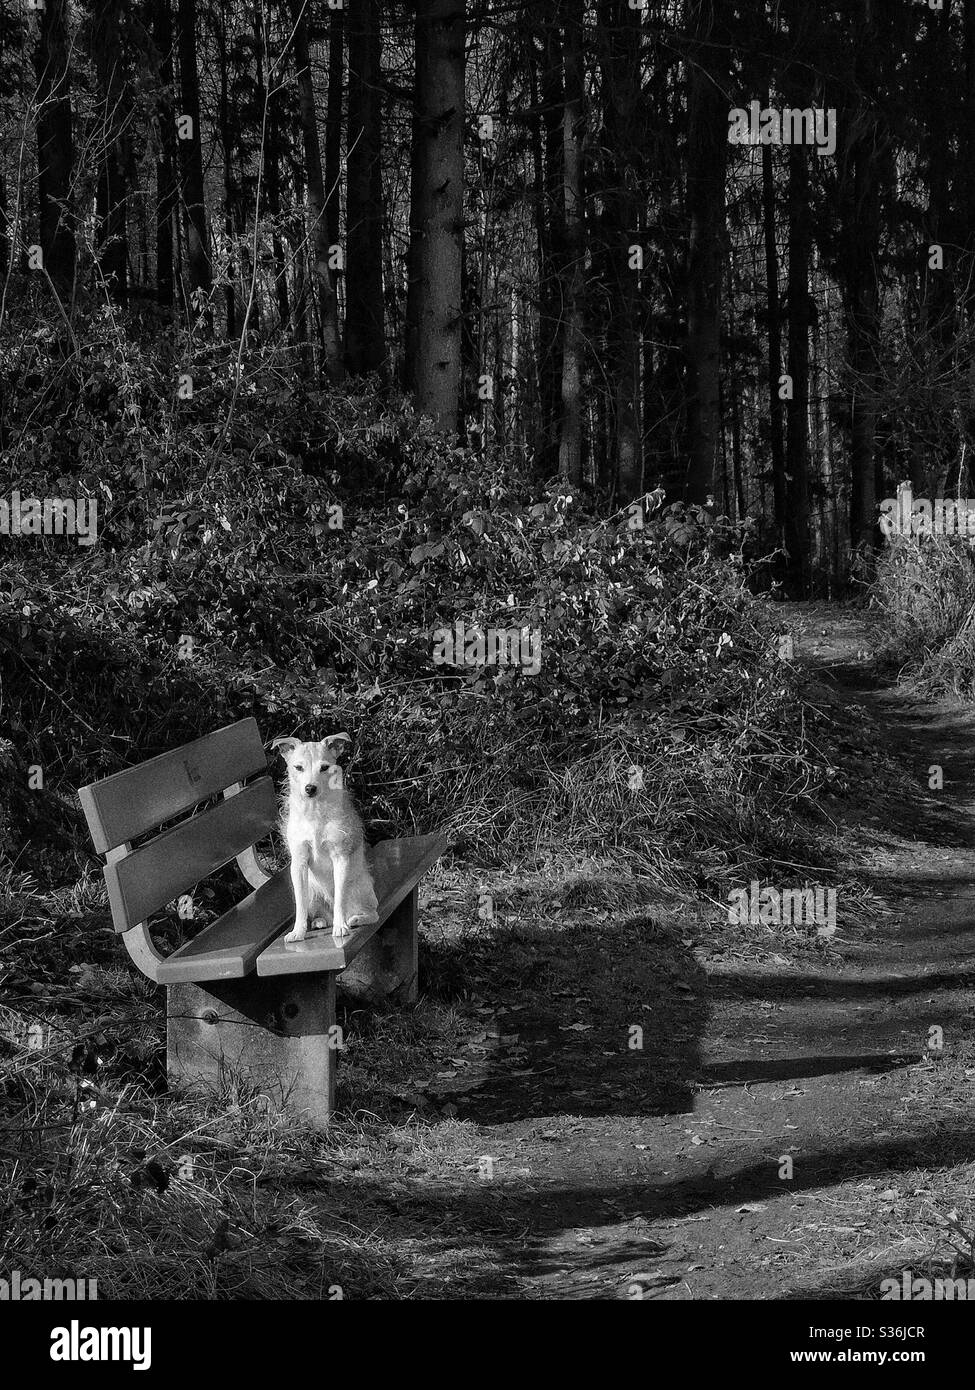 Joli terrier Jack Russell sur banc en bois Banque D'Images